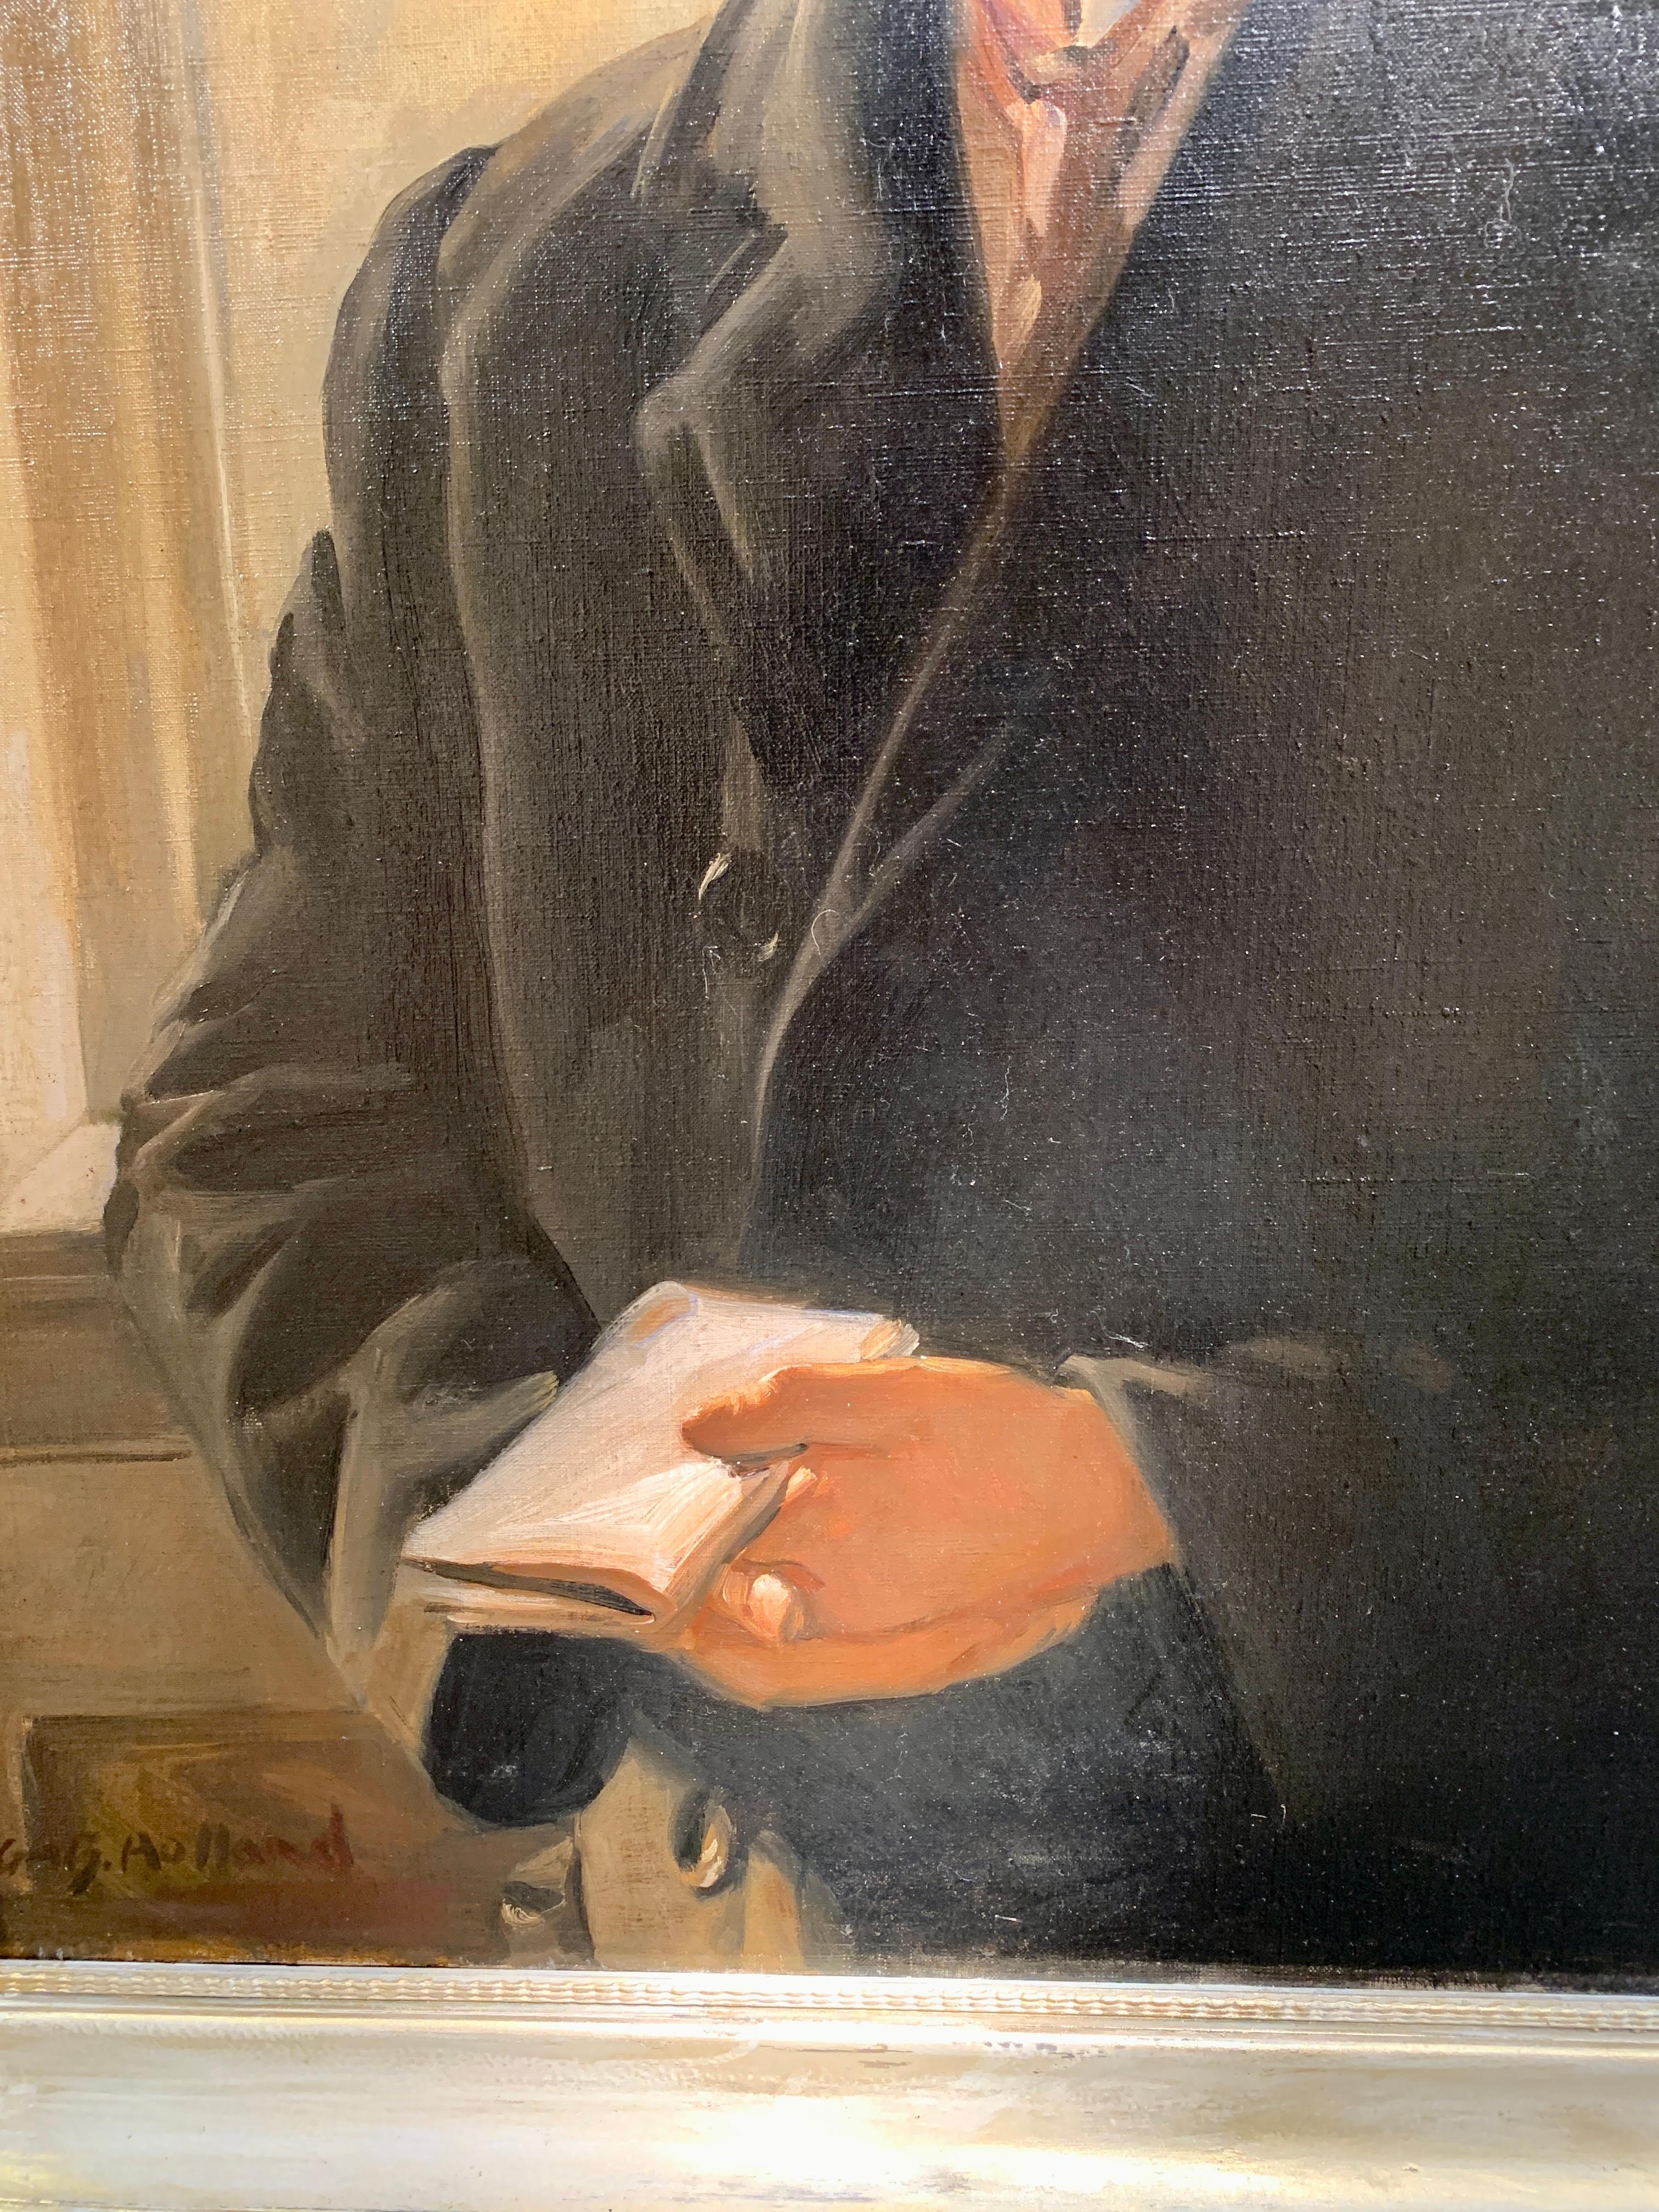 Portrait à l'huile d'un Bowler Hatted man, Angleterre, années 1930, Photographe John Bean - Post-impressionnisme Painting par George Herbert Buckingham Holland